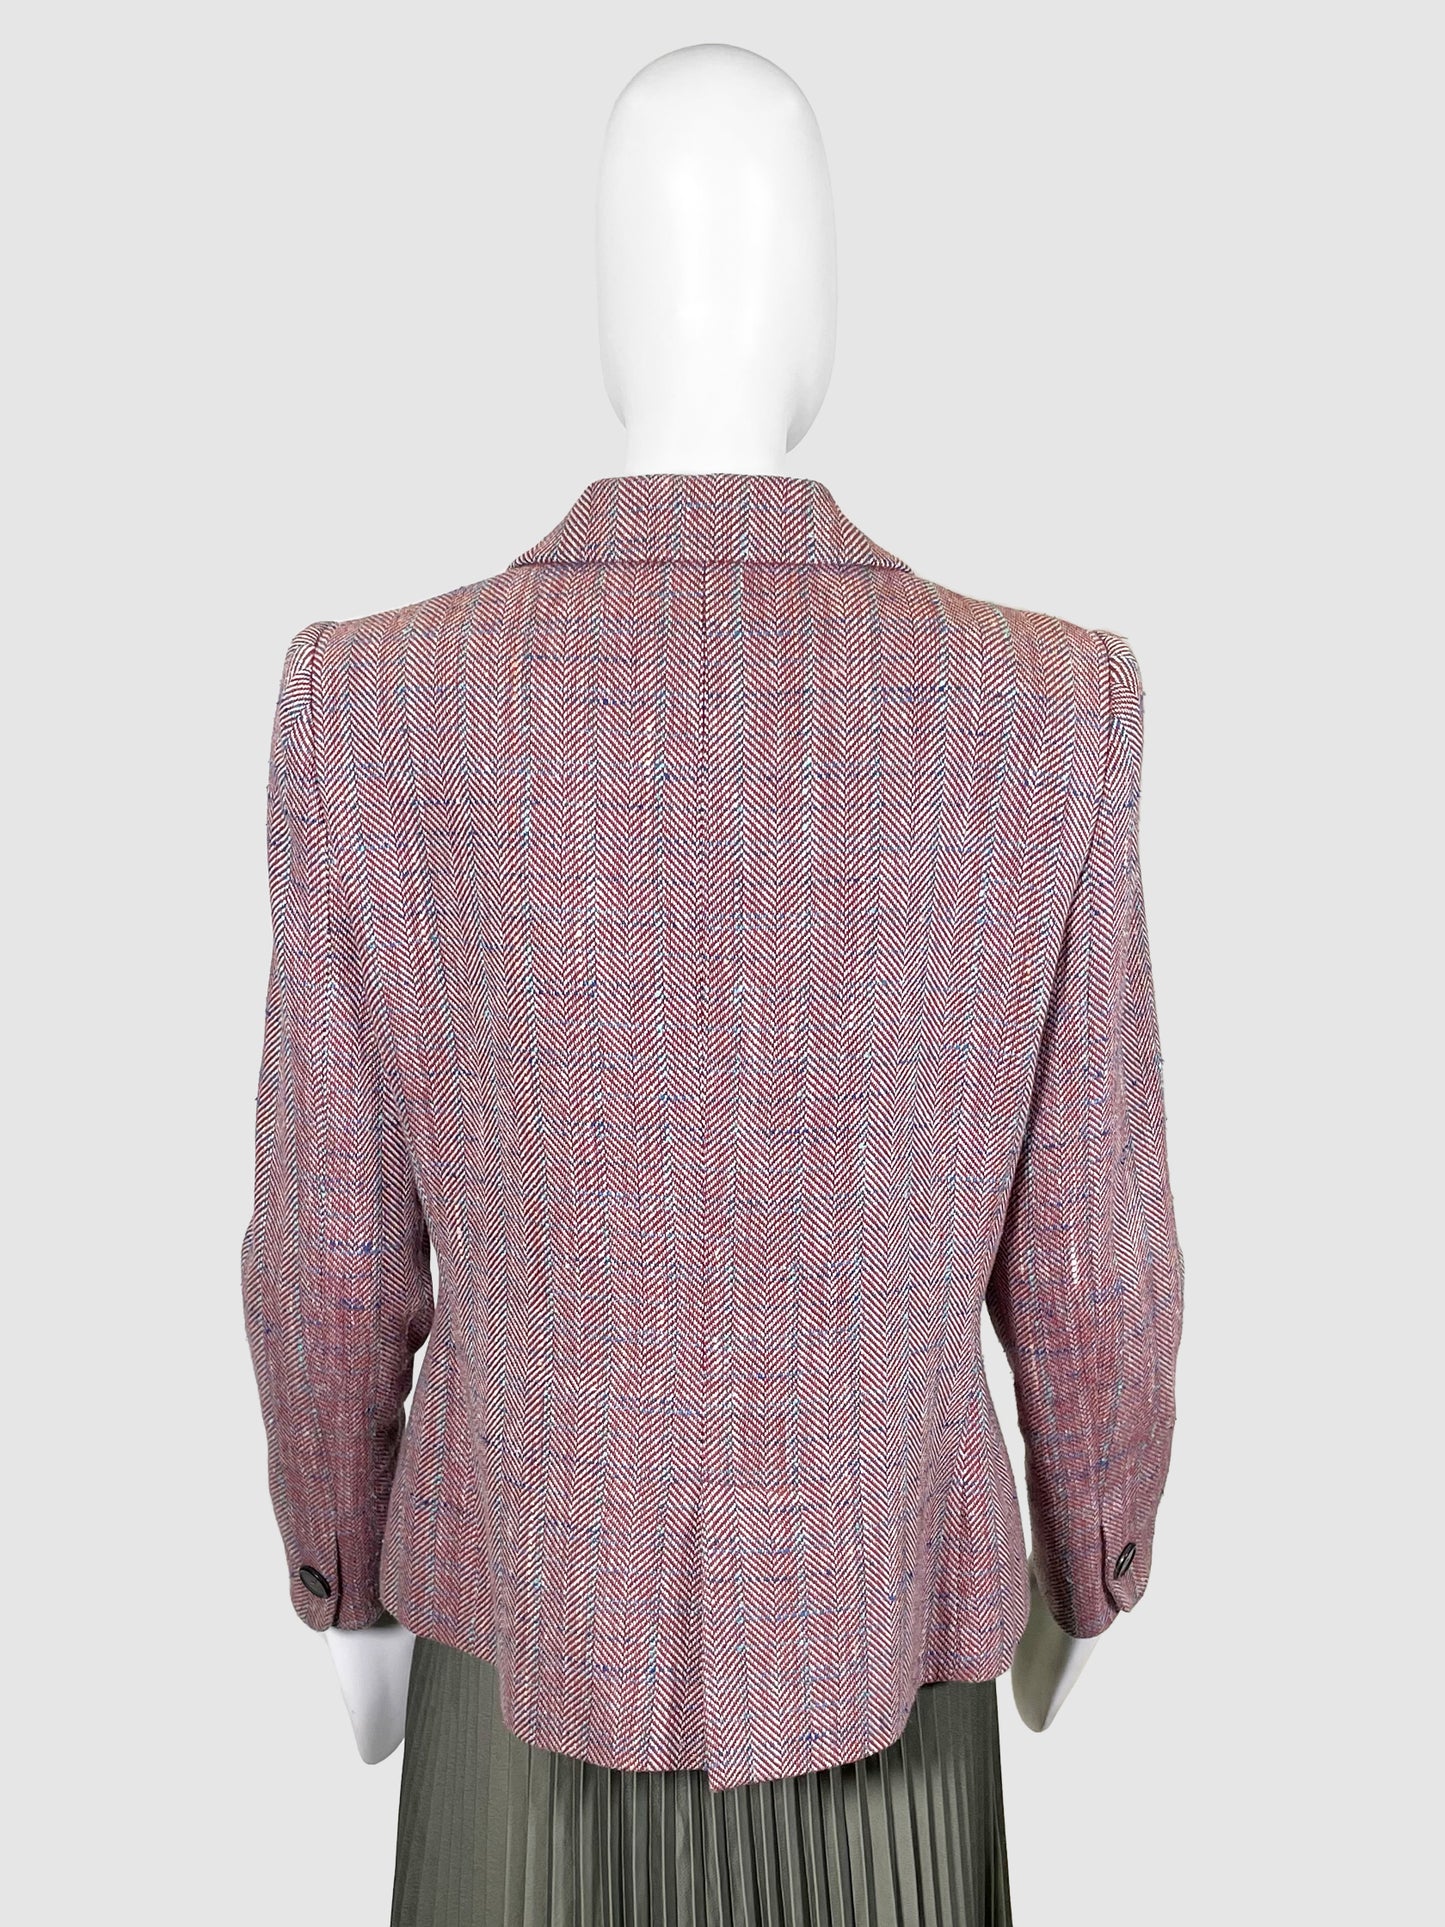 Giorgio Armani Tweed Blazer Jacket - Size 46